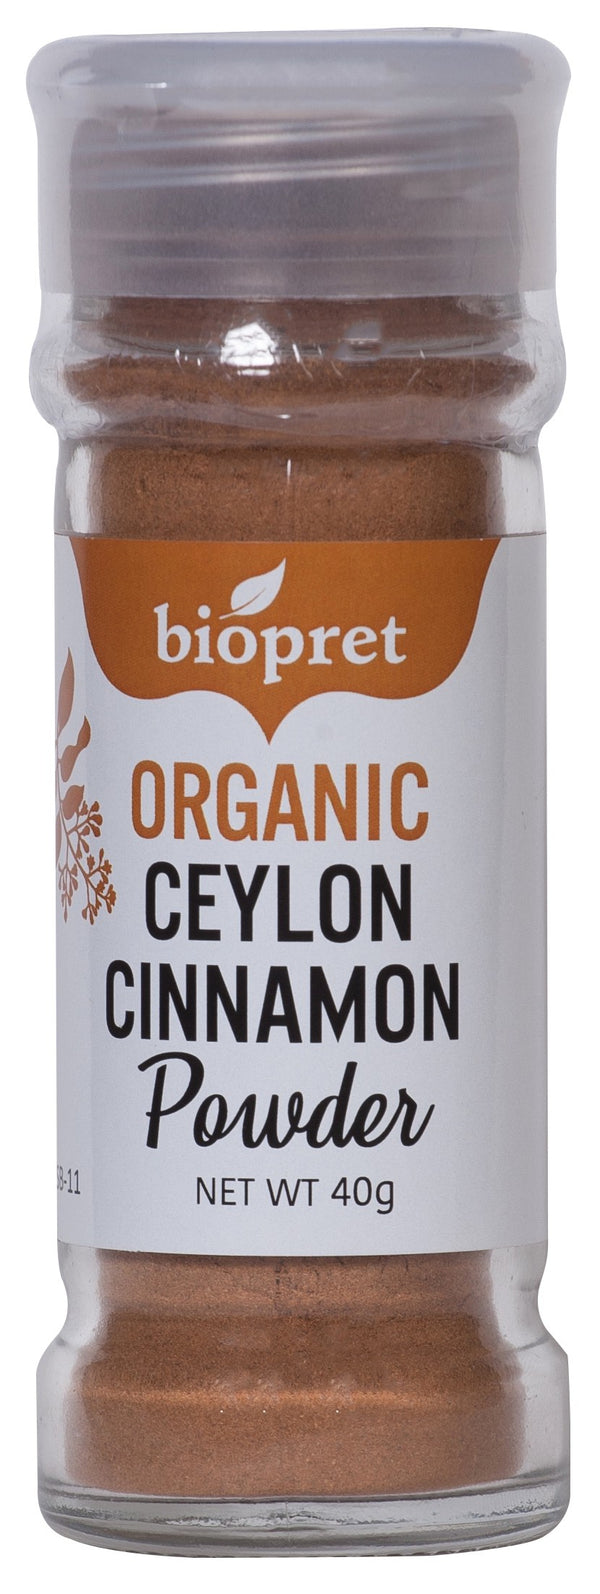 organic Ceylon cinnamon powder